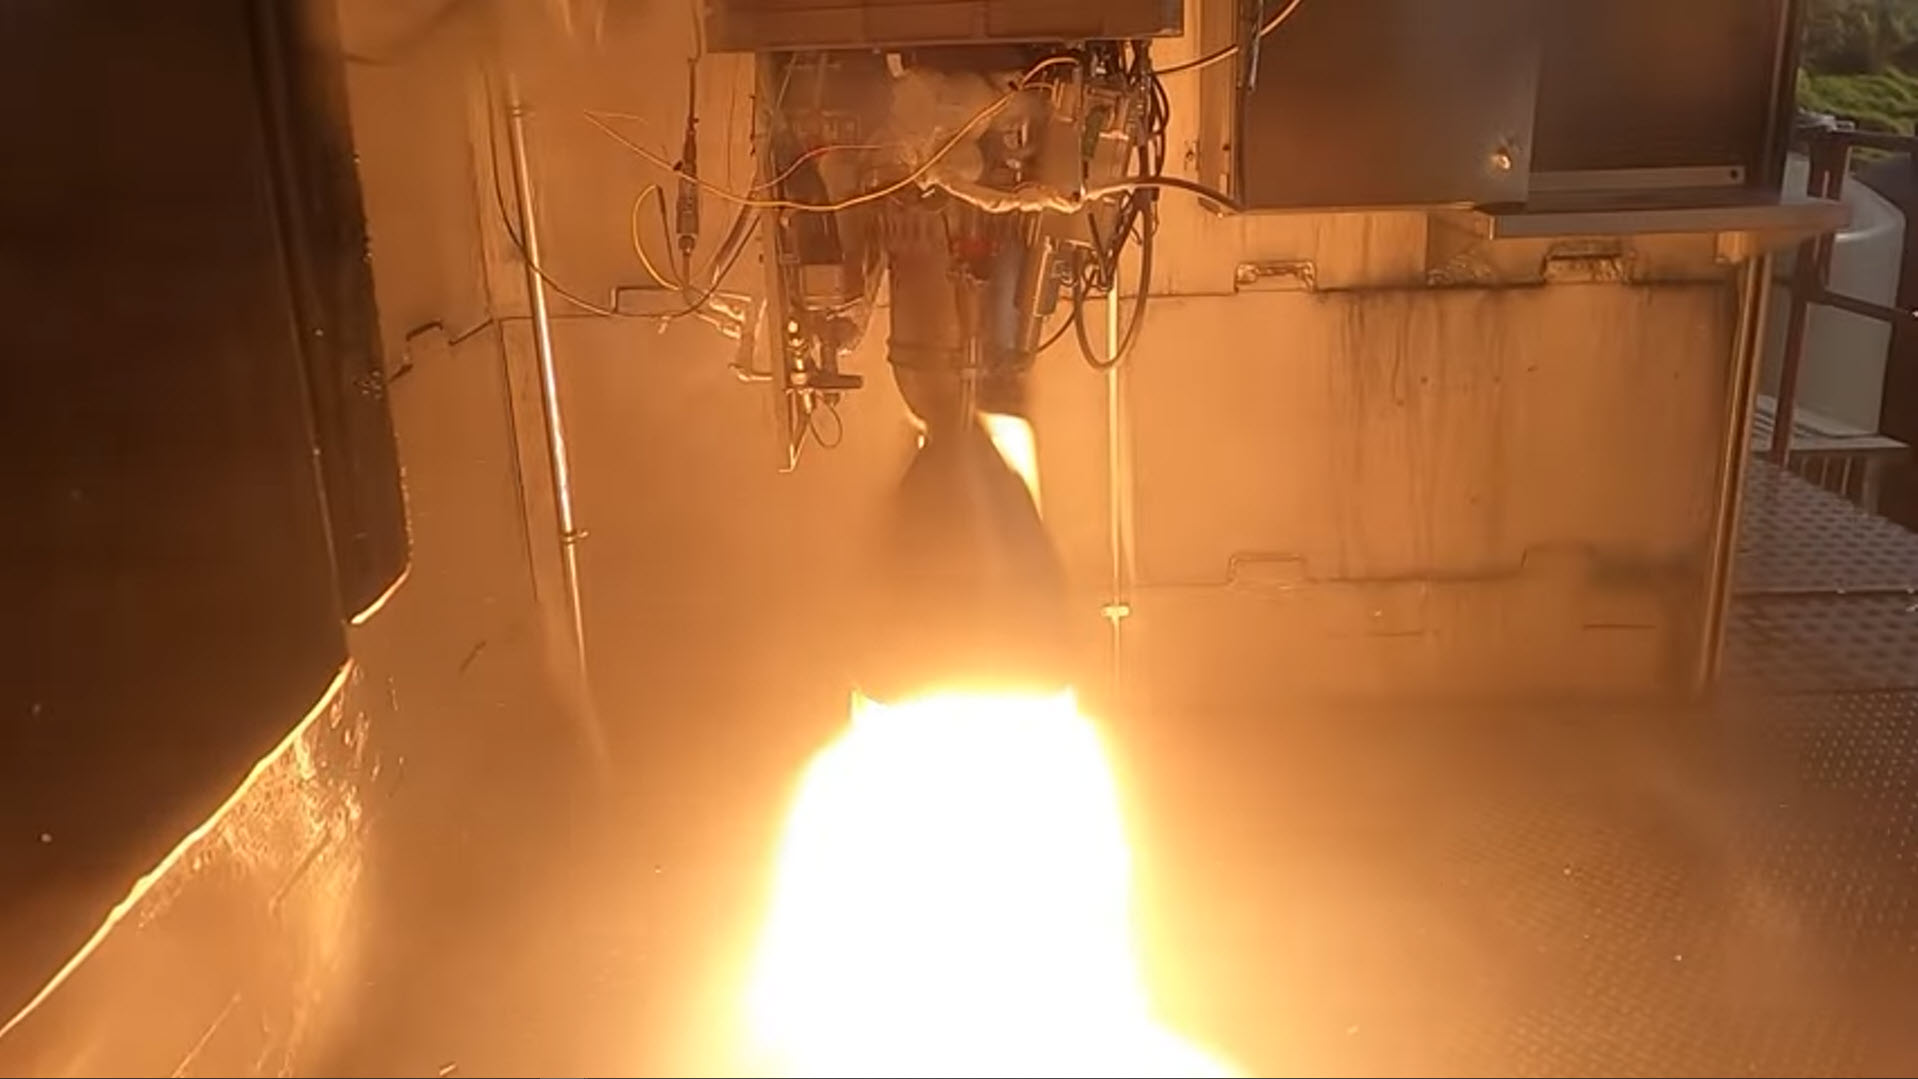 Rocket Lab ทดสอบจุดระเบิดเครื่องยนต์ของบูสเตอร์ที่นำกลับมาใช้ใหม่สำเร็จเป็นครั้งแรก